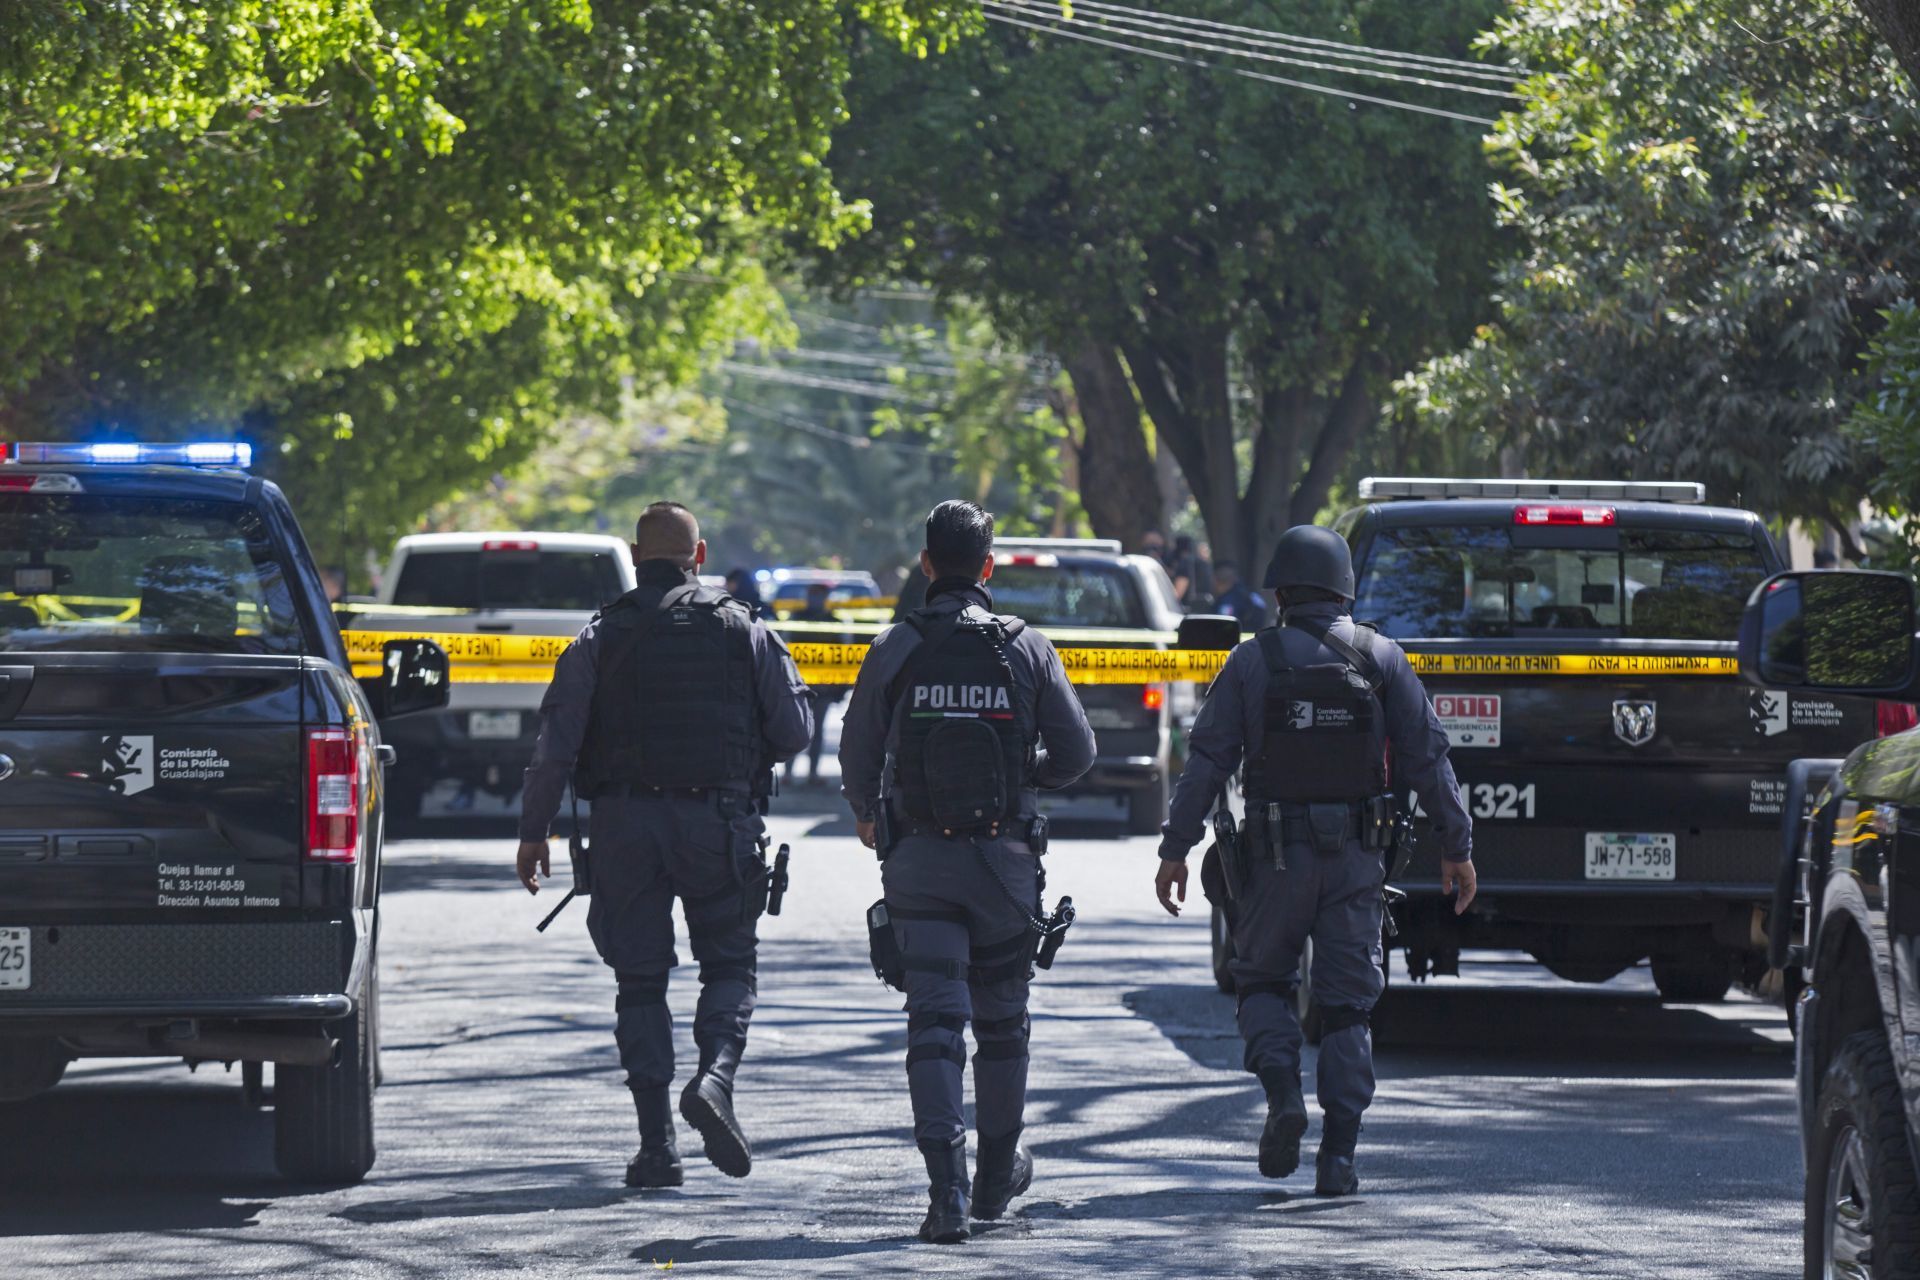 El lunes en la colonia Chapalita se registro un enfrentamiento entre policías de Guadalajara y civiles armados, esto mientras los uniformados atendían un reporte de personas privadas de la libertad, lo que dejo como saldo preliminar al menos dos personas fallecidas y una mas herida de gravedad.
FOTO: FERNANDO CARRANZA GARCIA / CUARTOSCURO